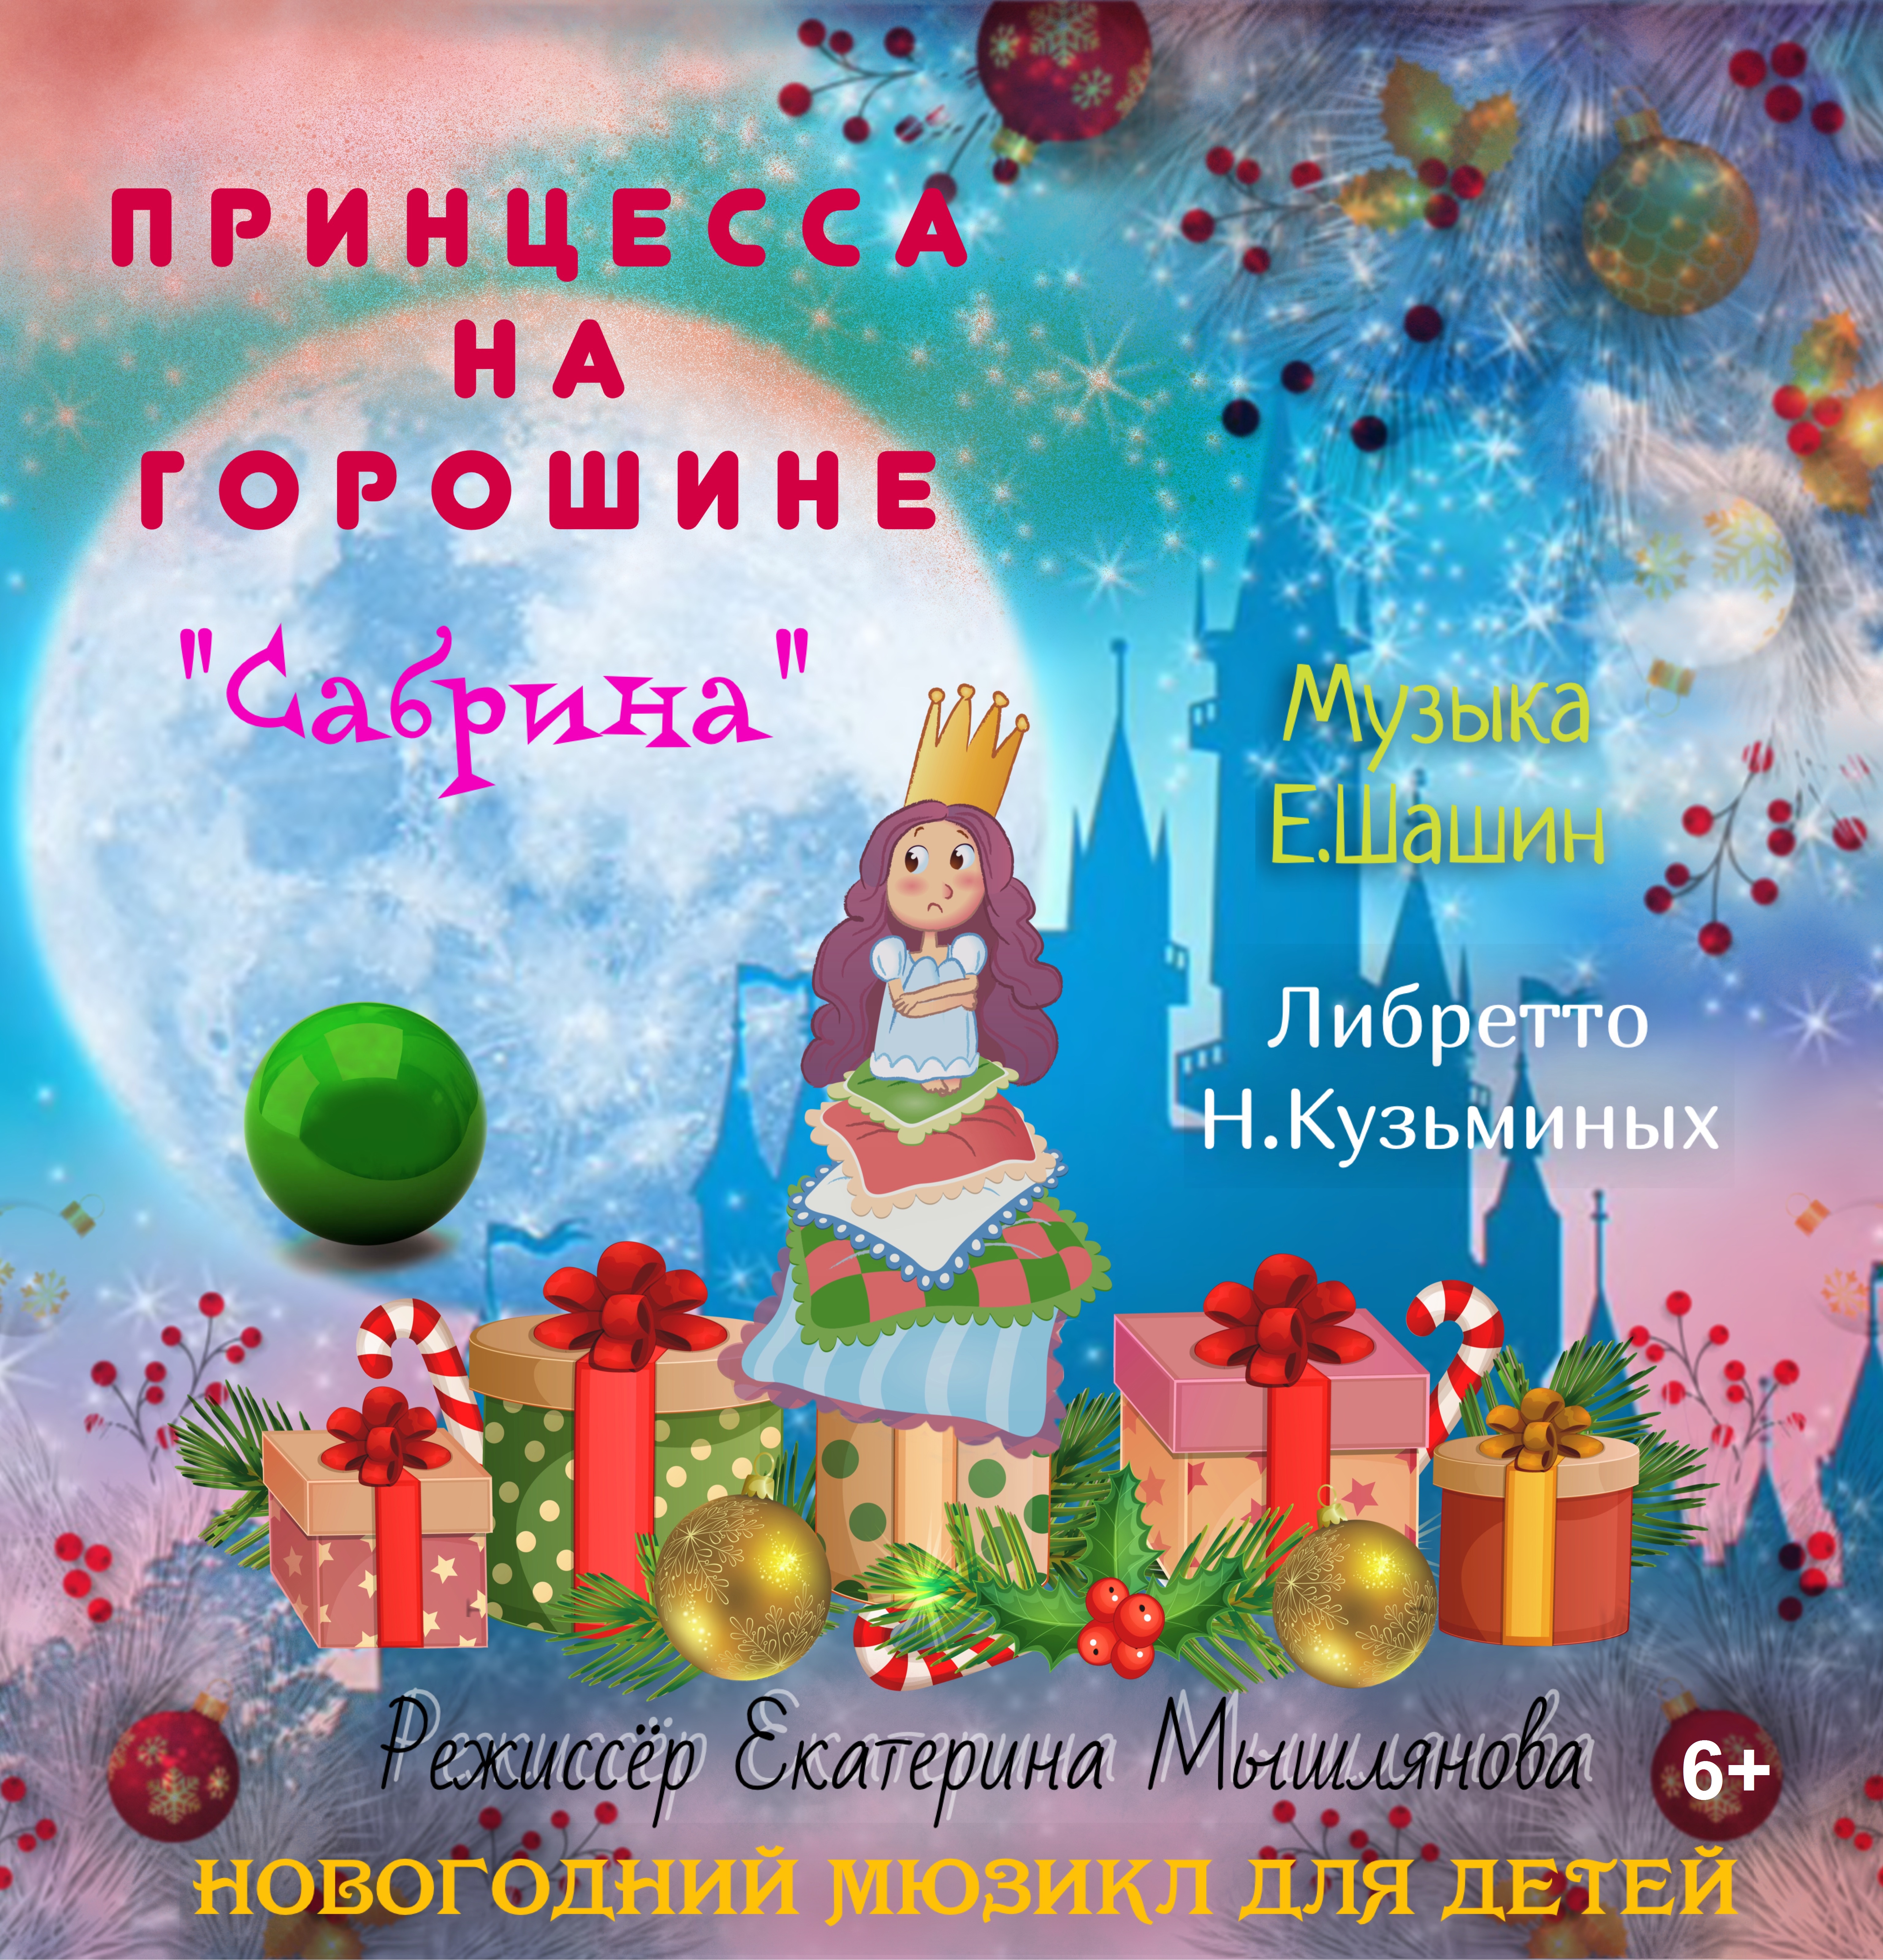 Новогодние праздники в музыкальном театре: «Сабрина - Принцесса на горошине» 